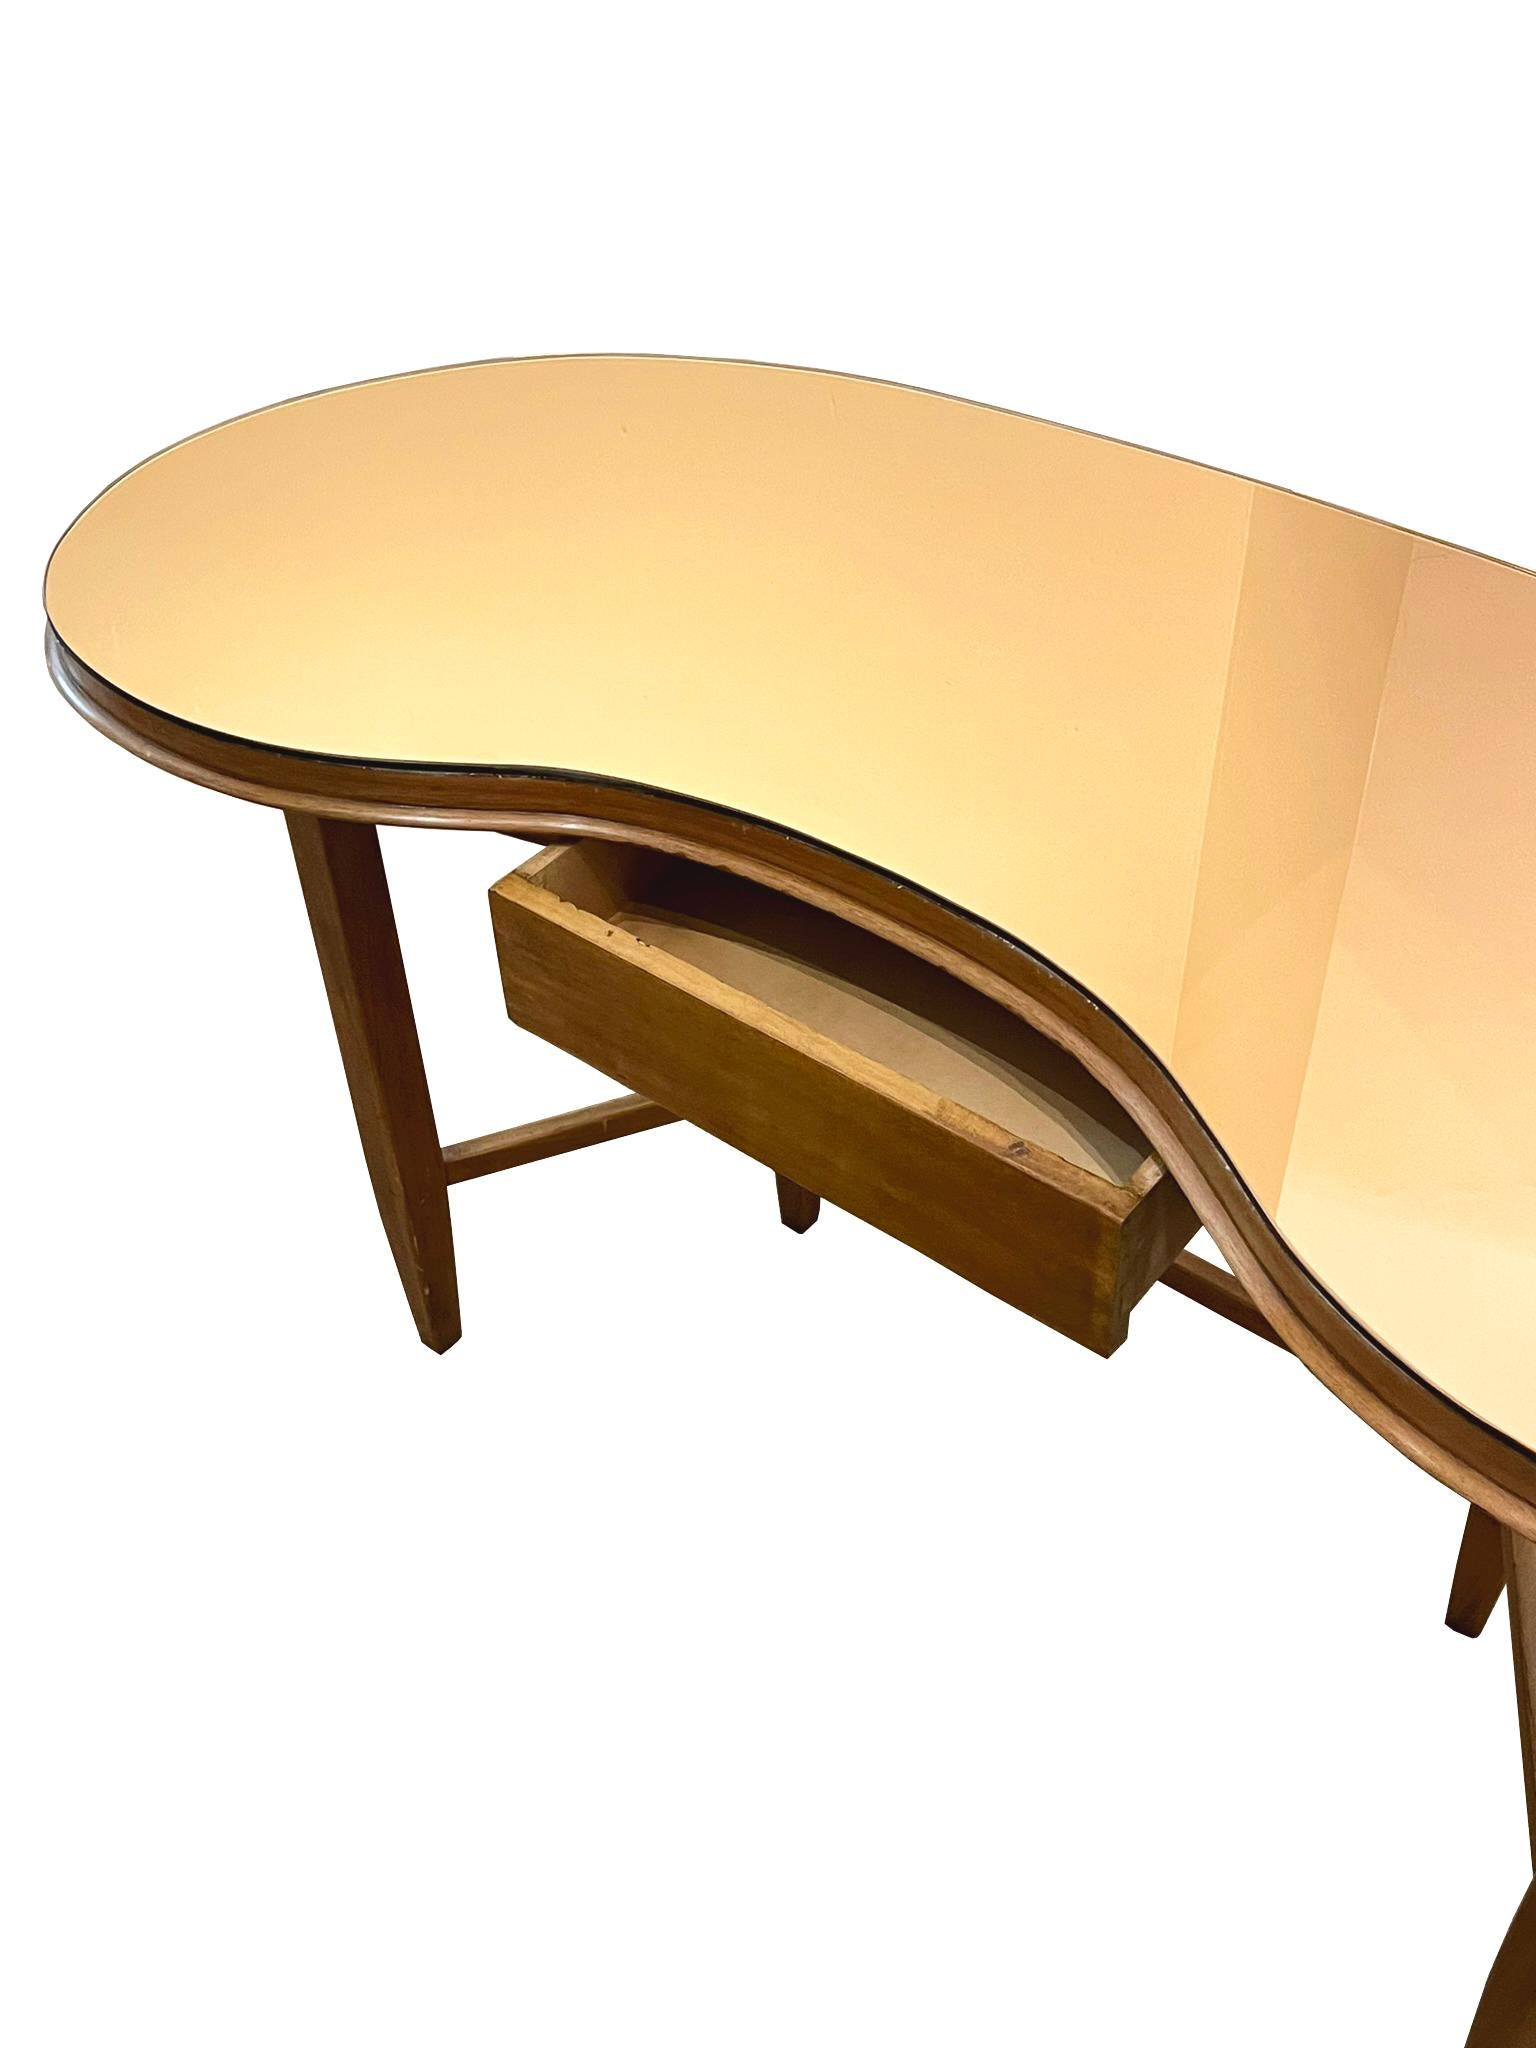 Italian A Gio Ponti Console table in walnut and copper colored glass